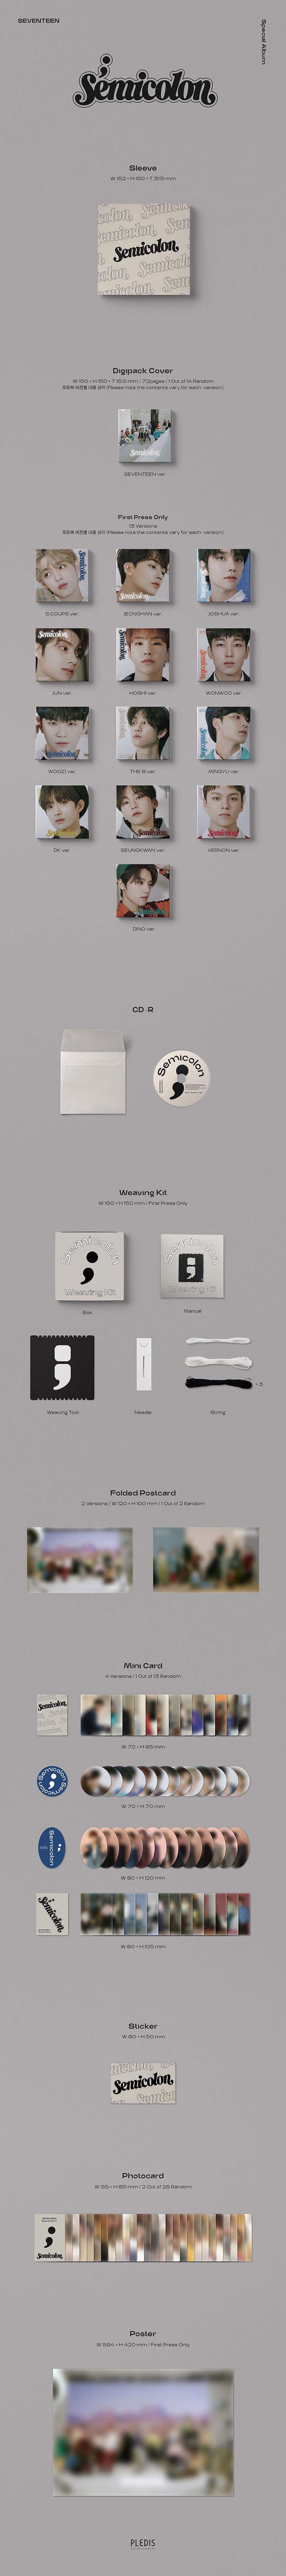 seventeen-semicolon-special-album-wholesale